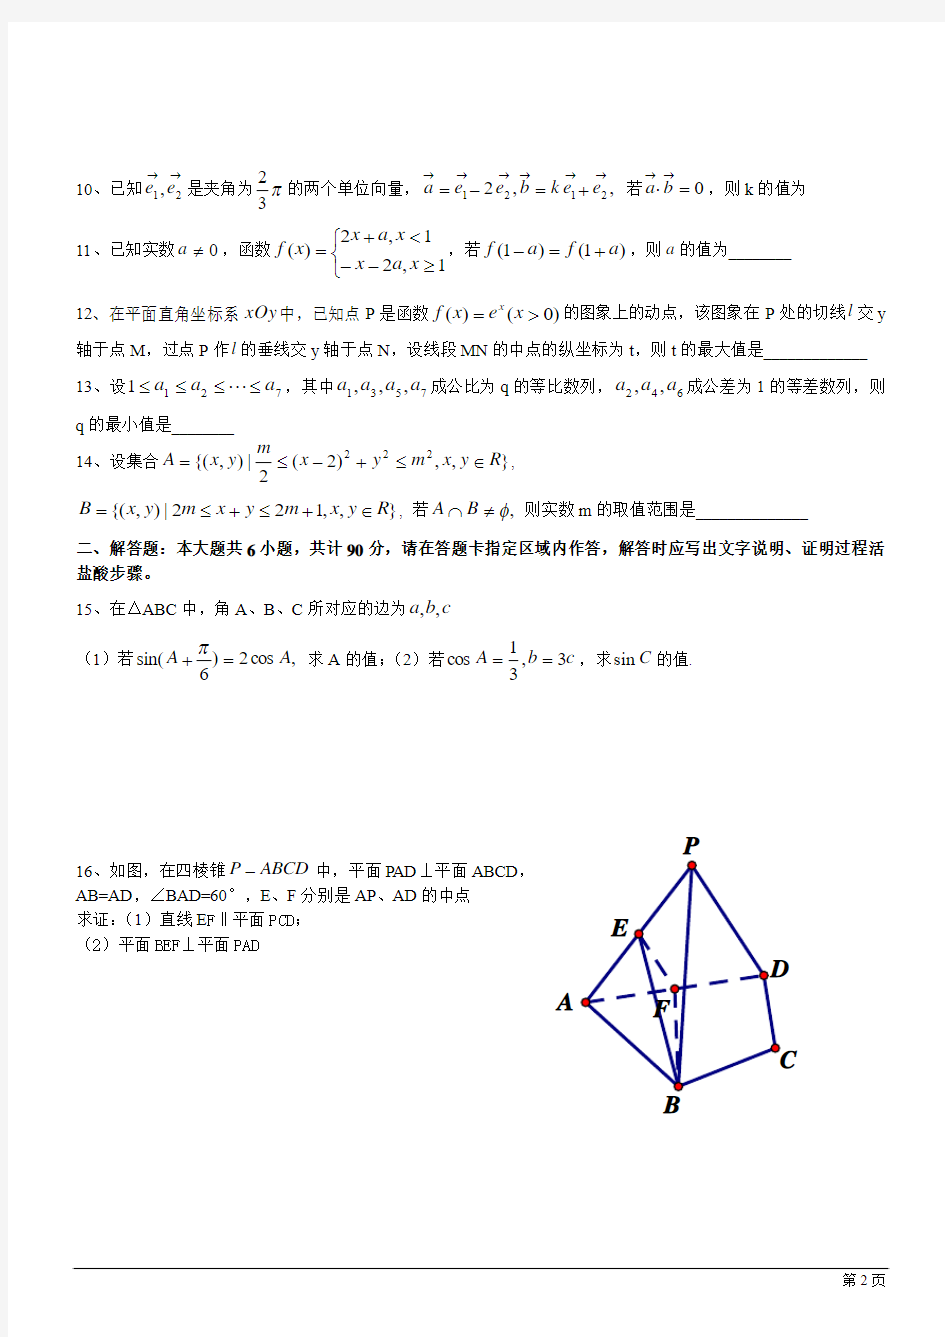 2012年江苏高考数学试题(含附加题及答案)